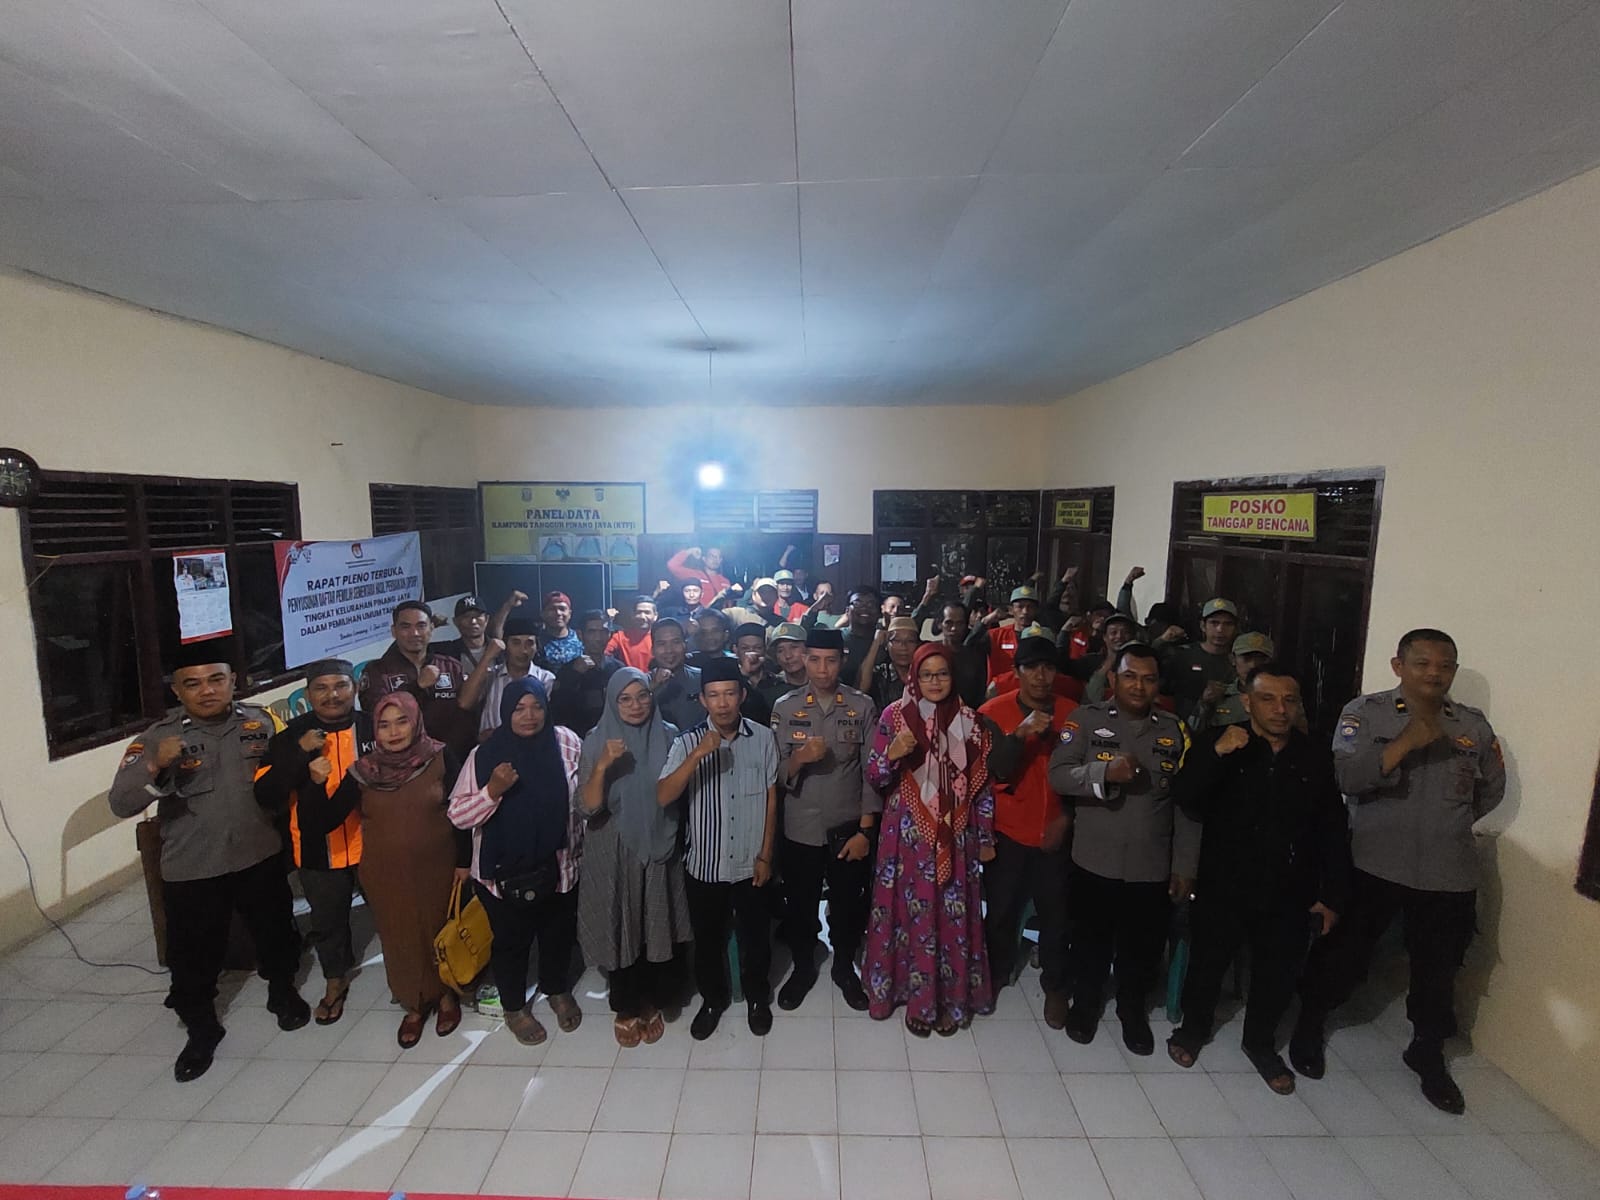 Sambangi Warga Kedaung, Sat Binmas Polresta Bandar Lampung Berikan Penyuluhan Terkait Paham Radikalisme dan Intoleransi